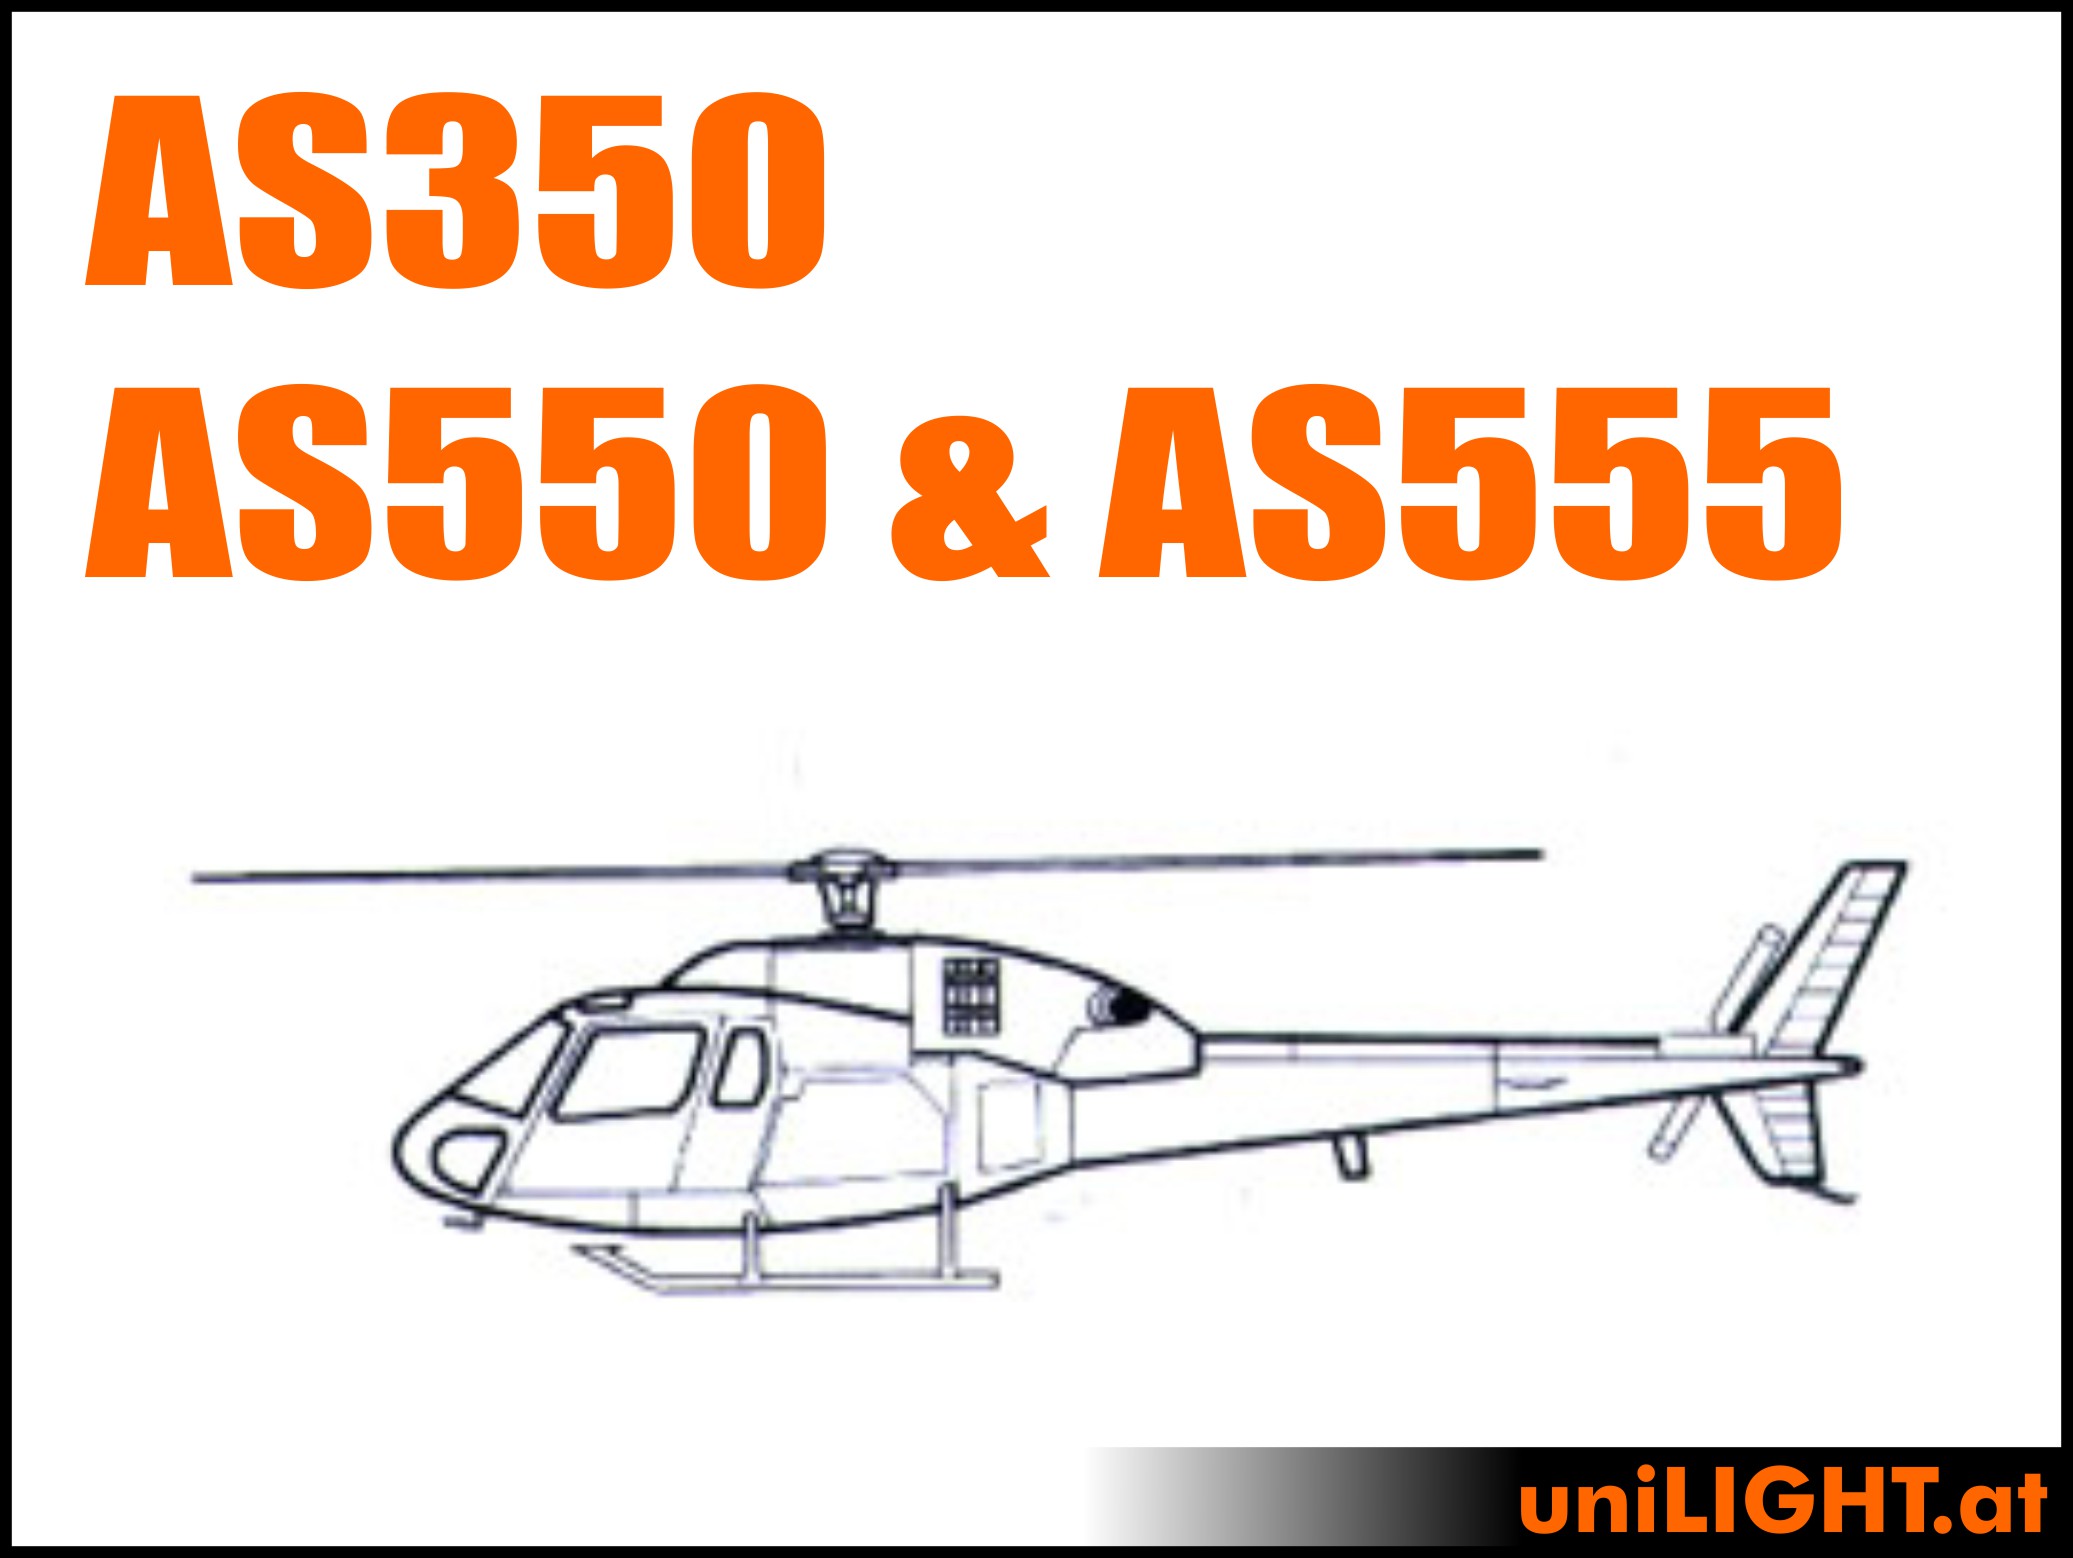 AS350 (AS550 & AS555)